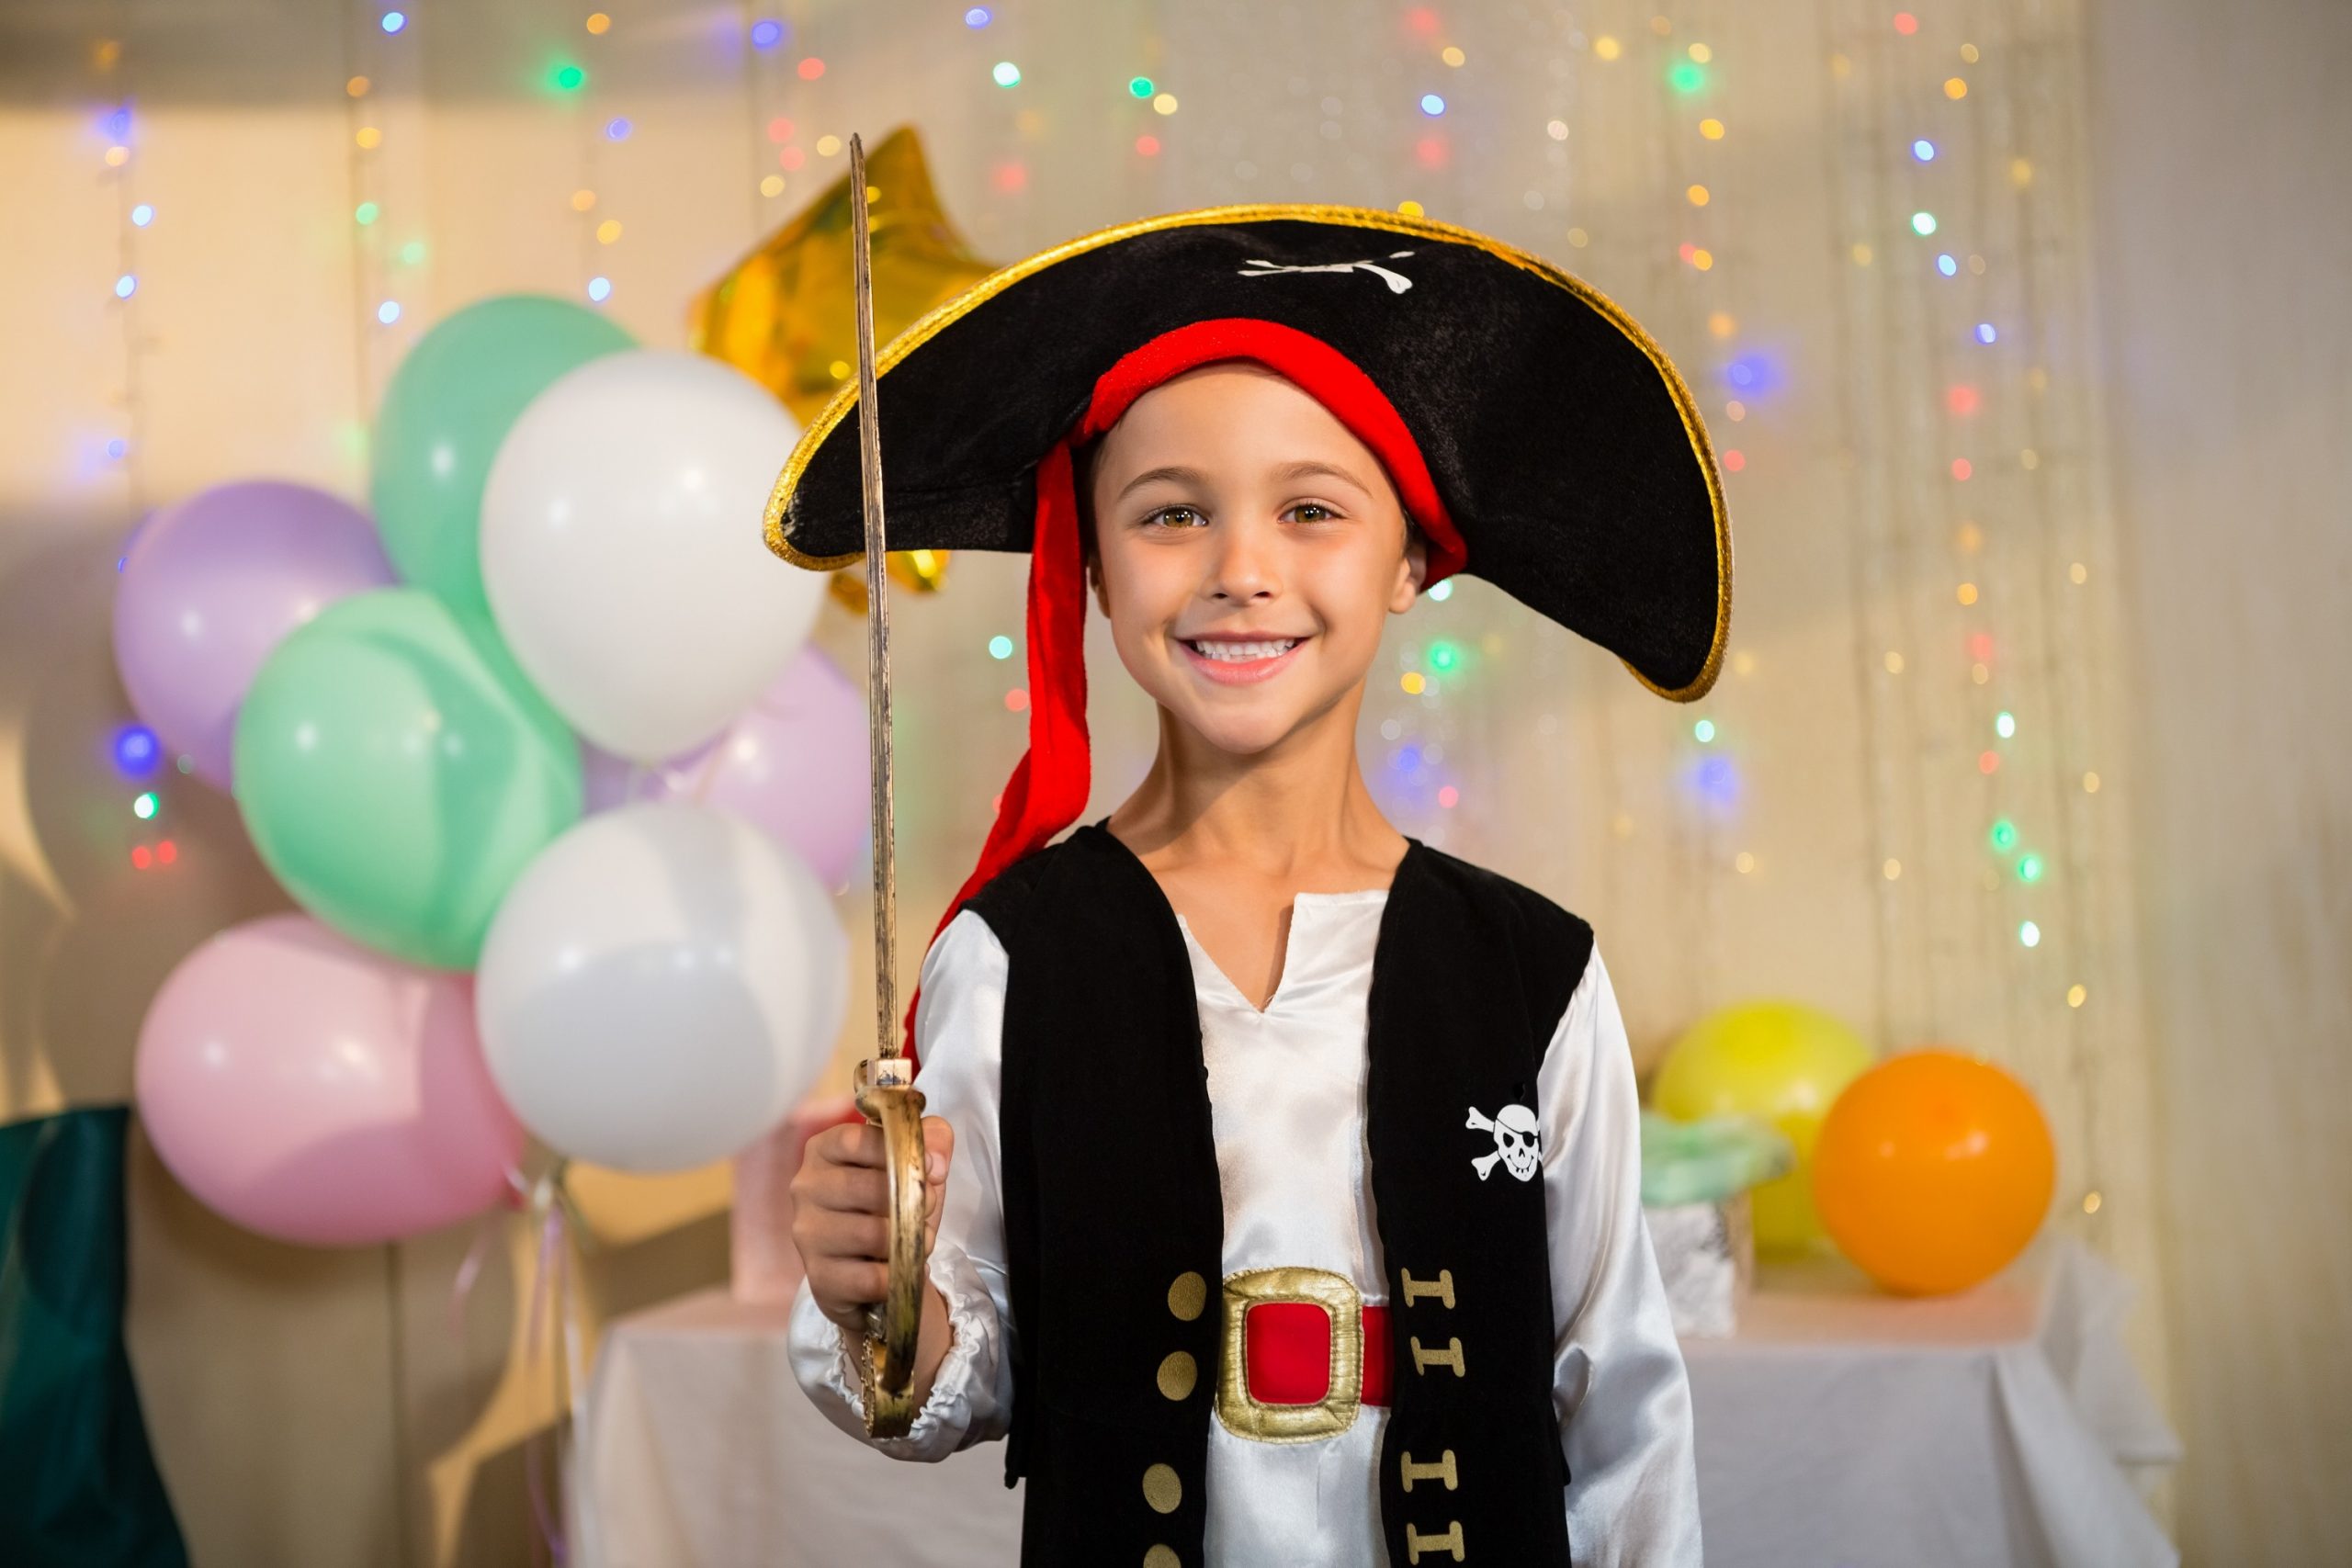 Garoto fantasiado de pirata, um dos melhores temas para festa infantil.